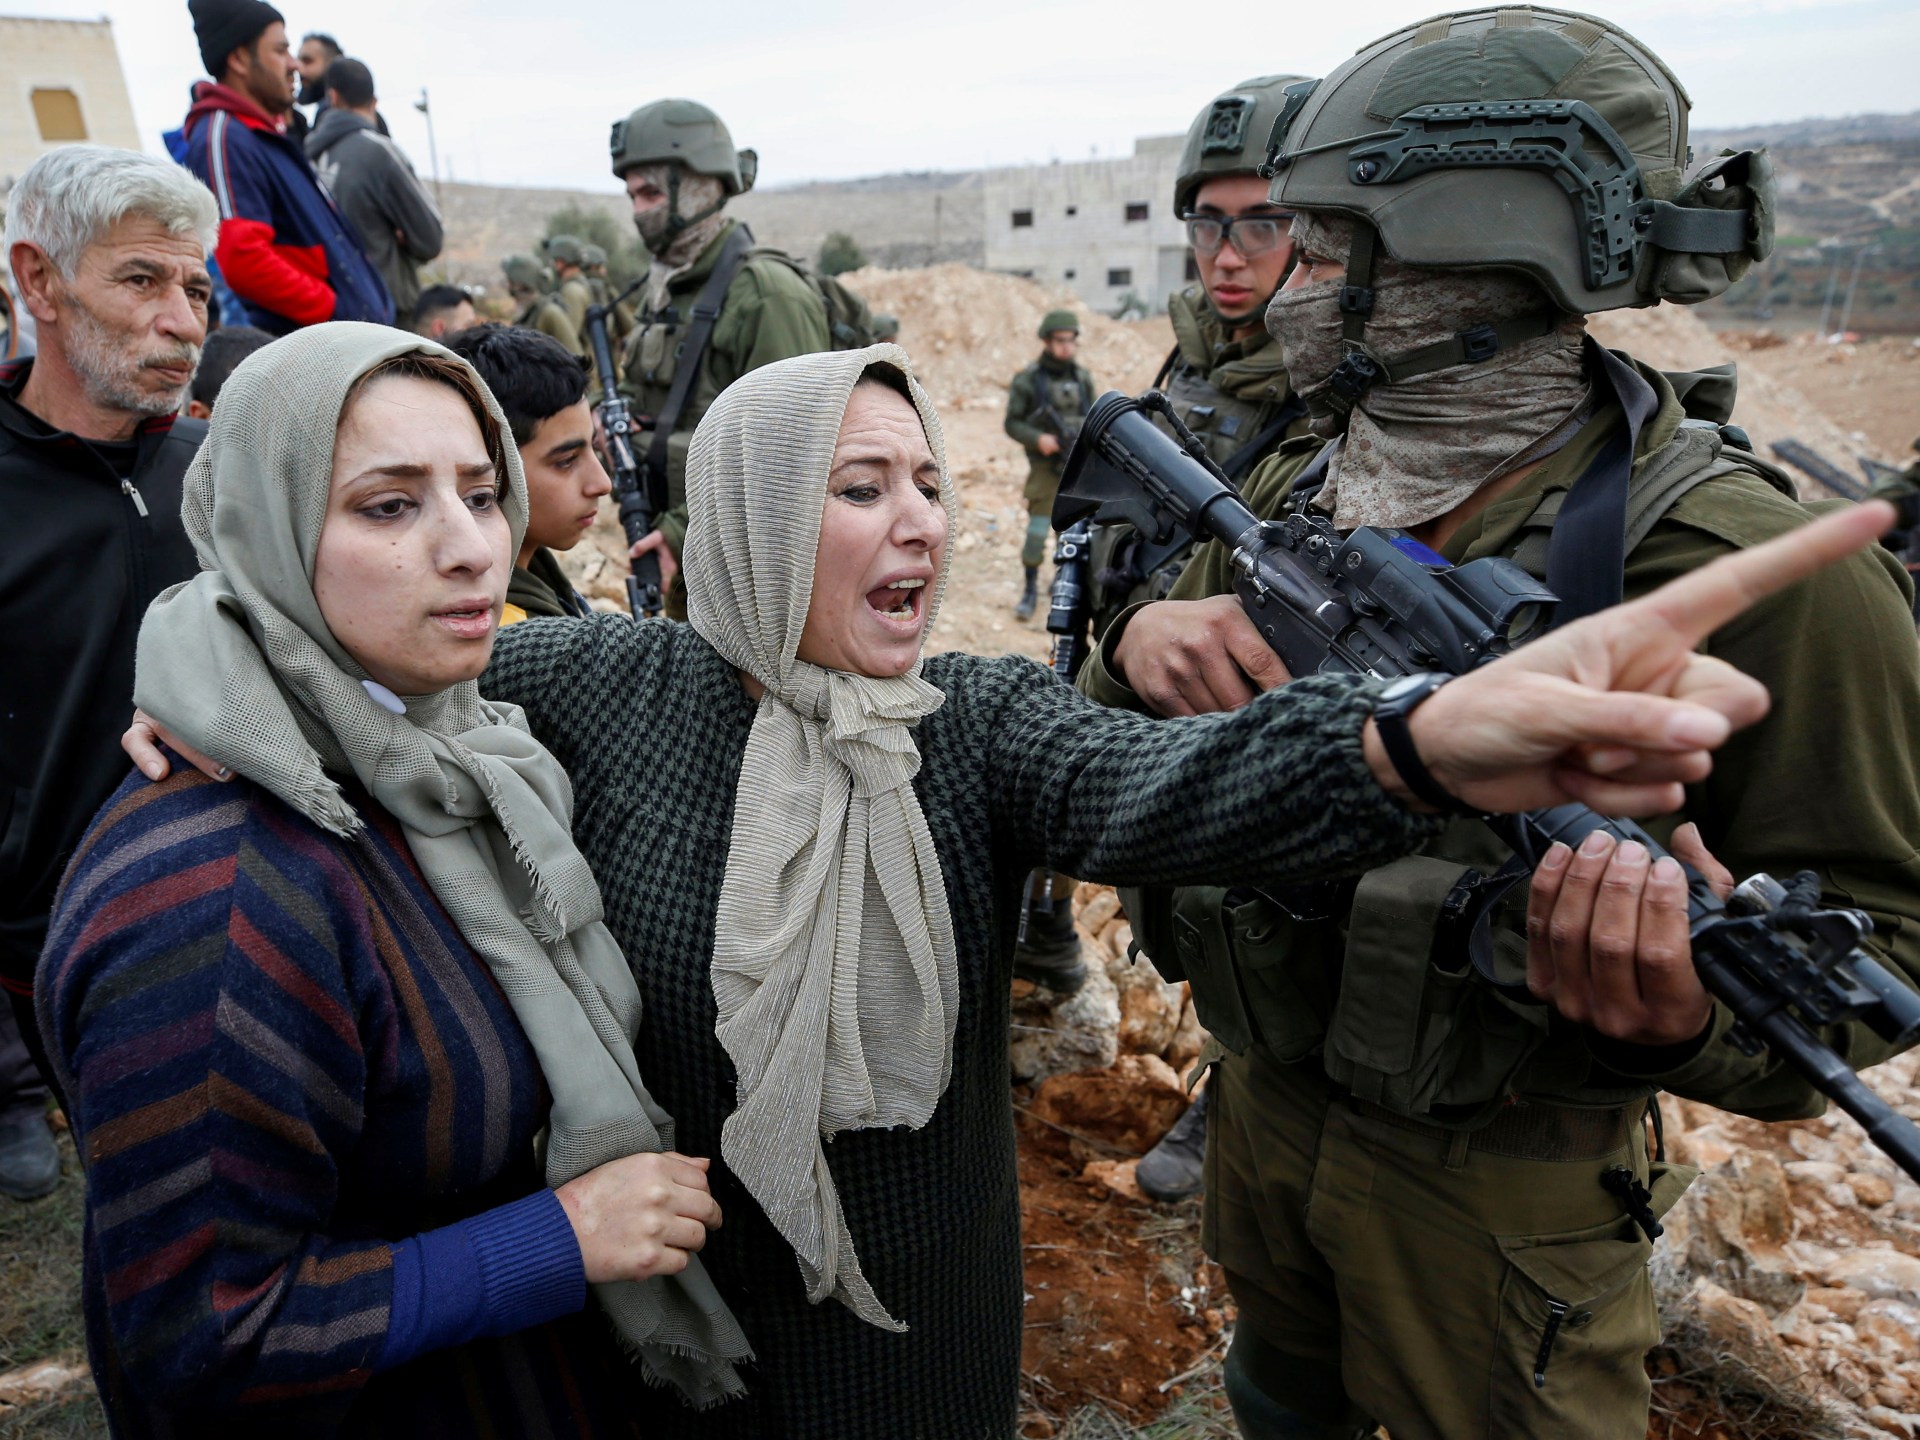 قوات الاحتلال تقتحم عدة بلدات في الضفة الغربية | أخبار – البوكس نيوز